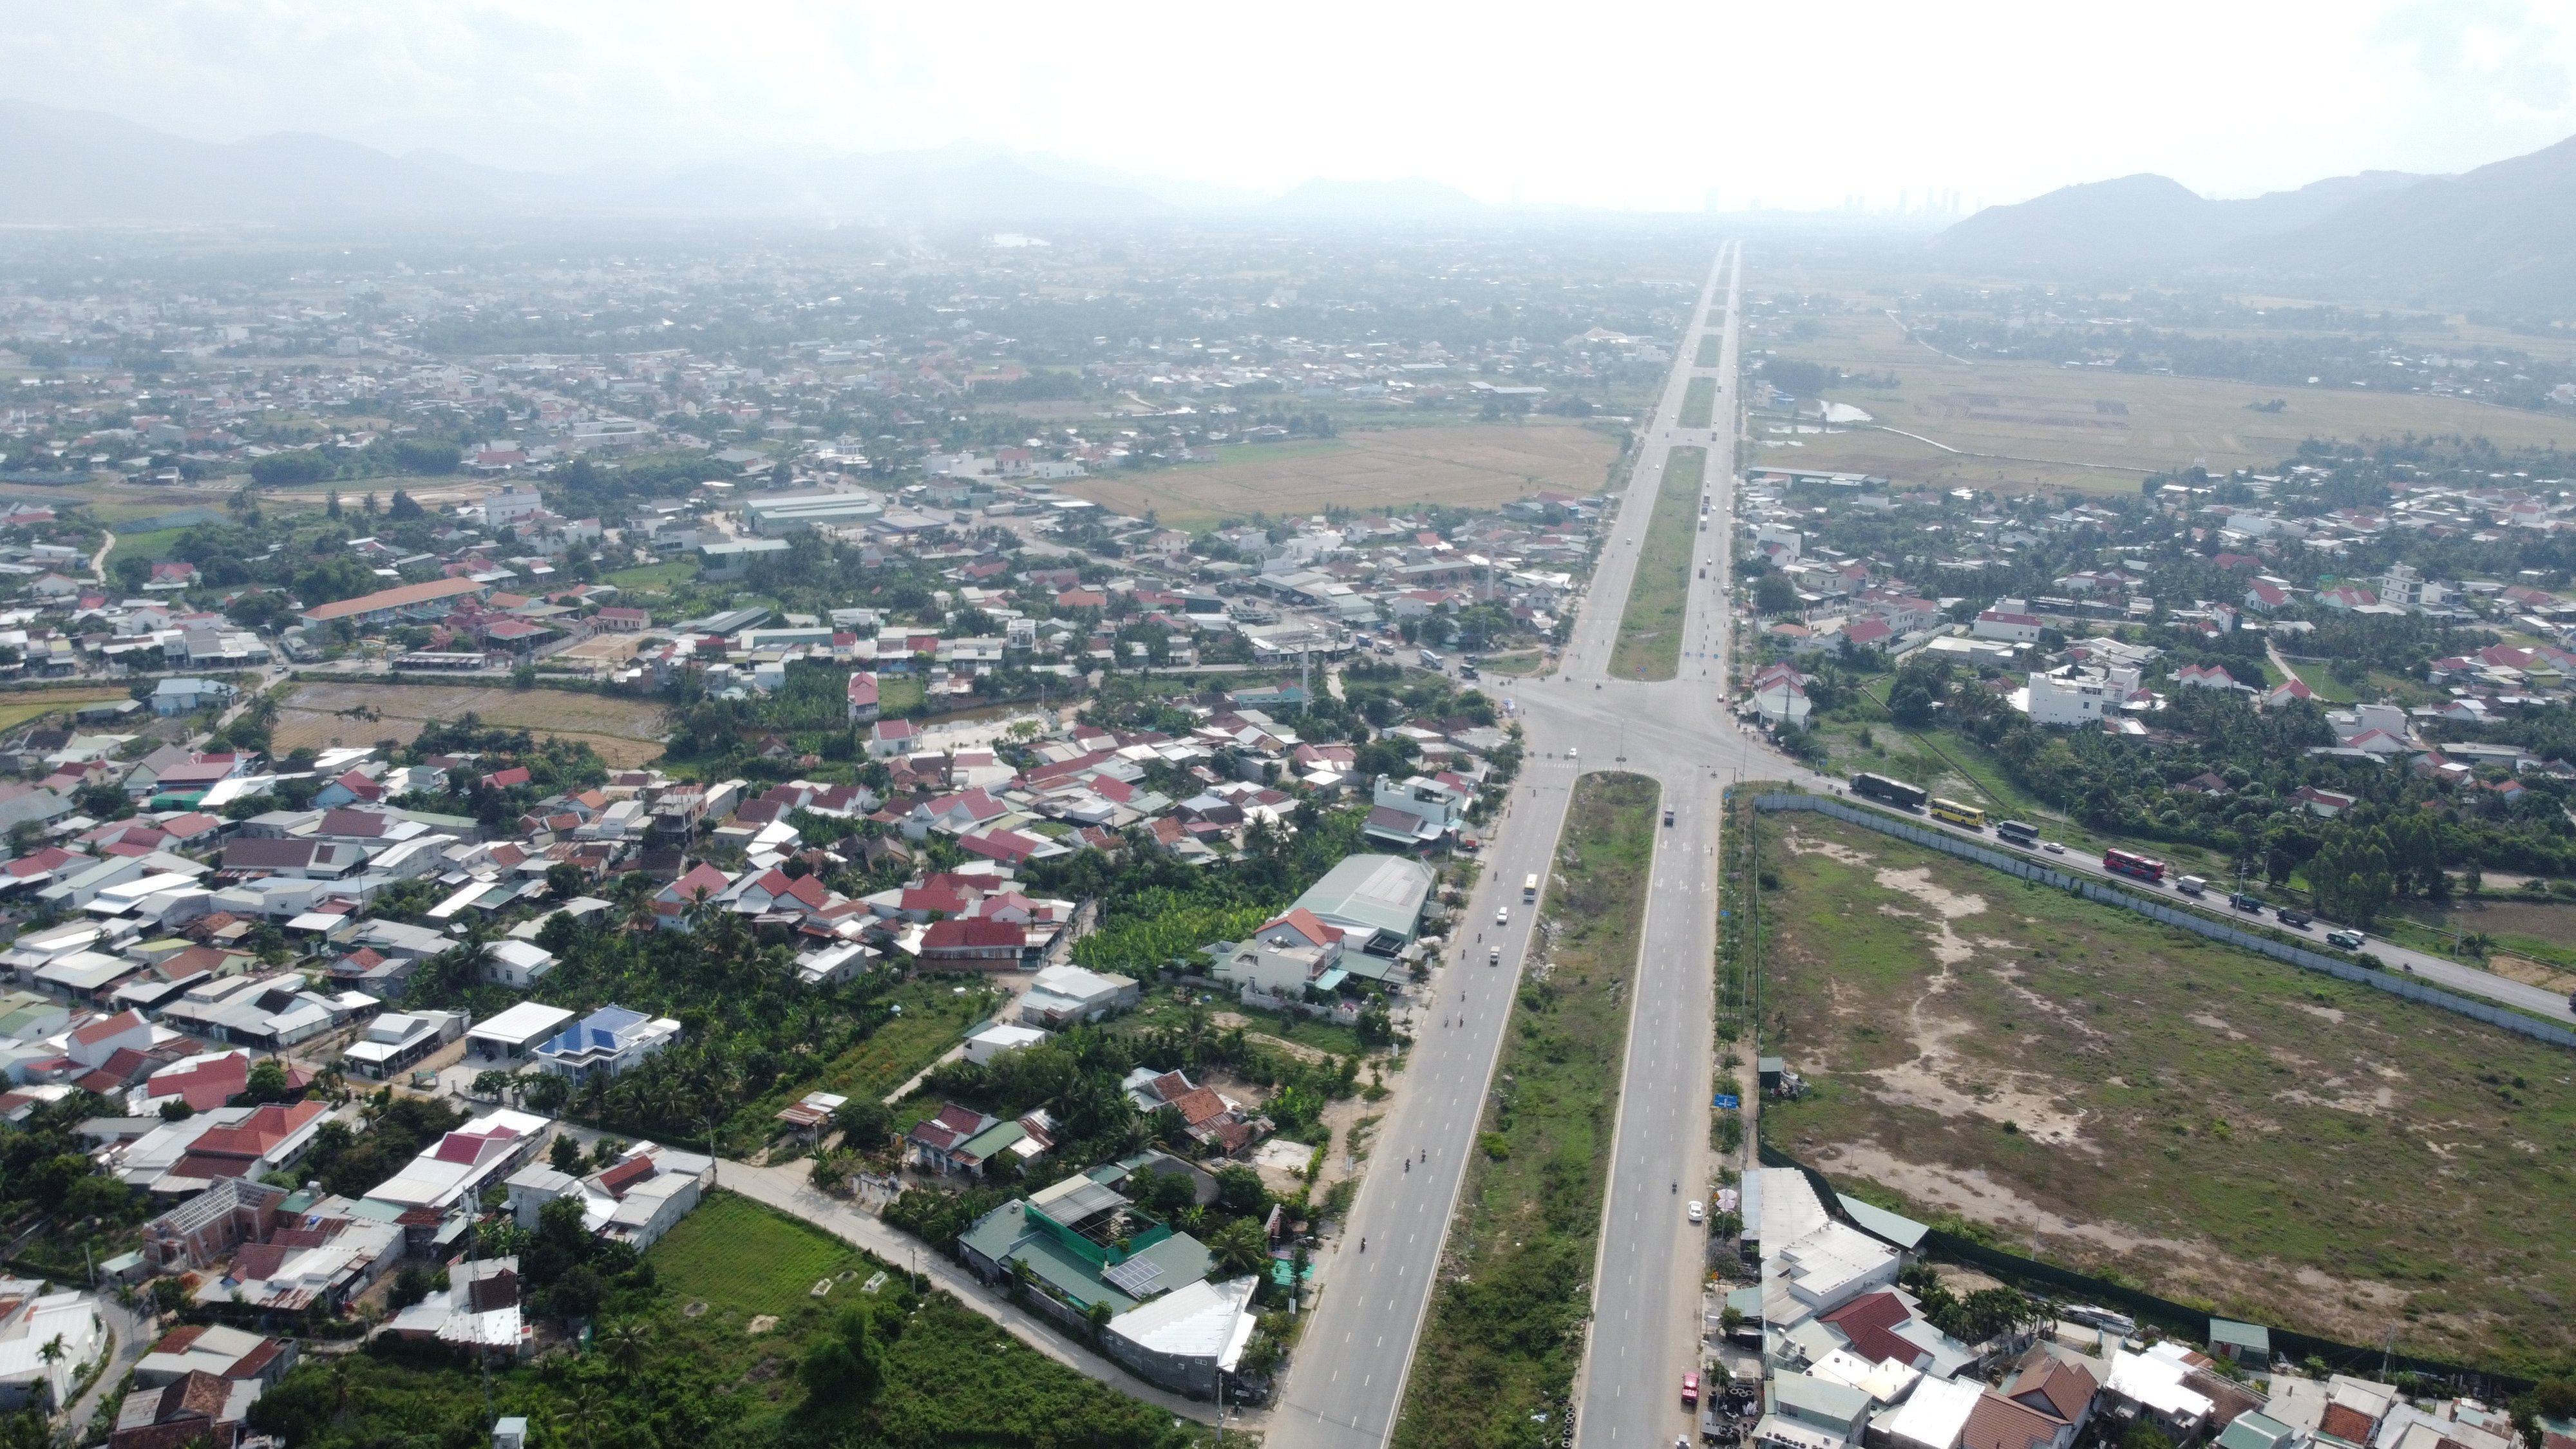 Bất động sản - Tp.Nha Trang thông qua quy hoạch sử dụng đất với nhiều thay đổi lớn